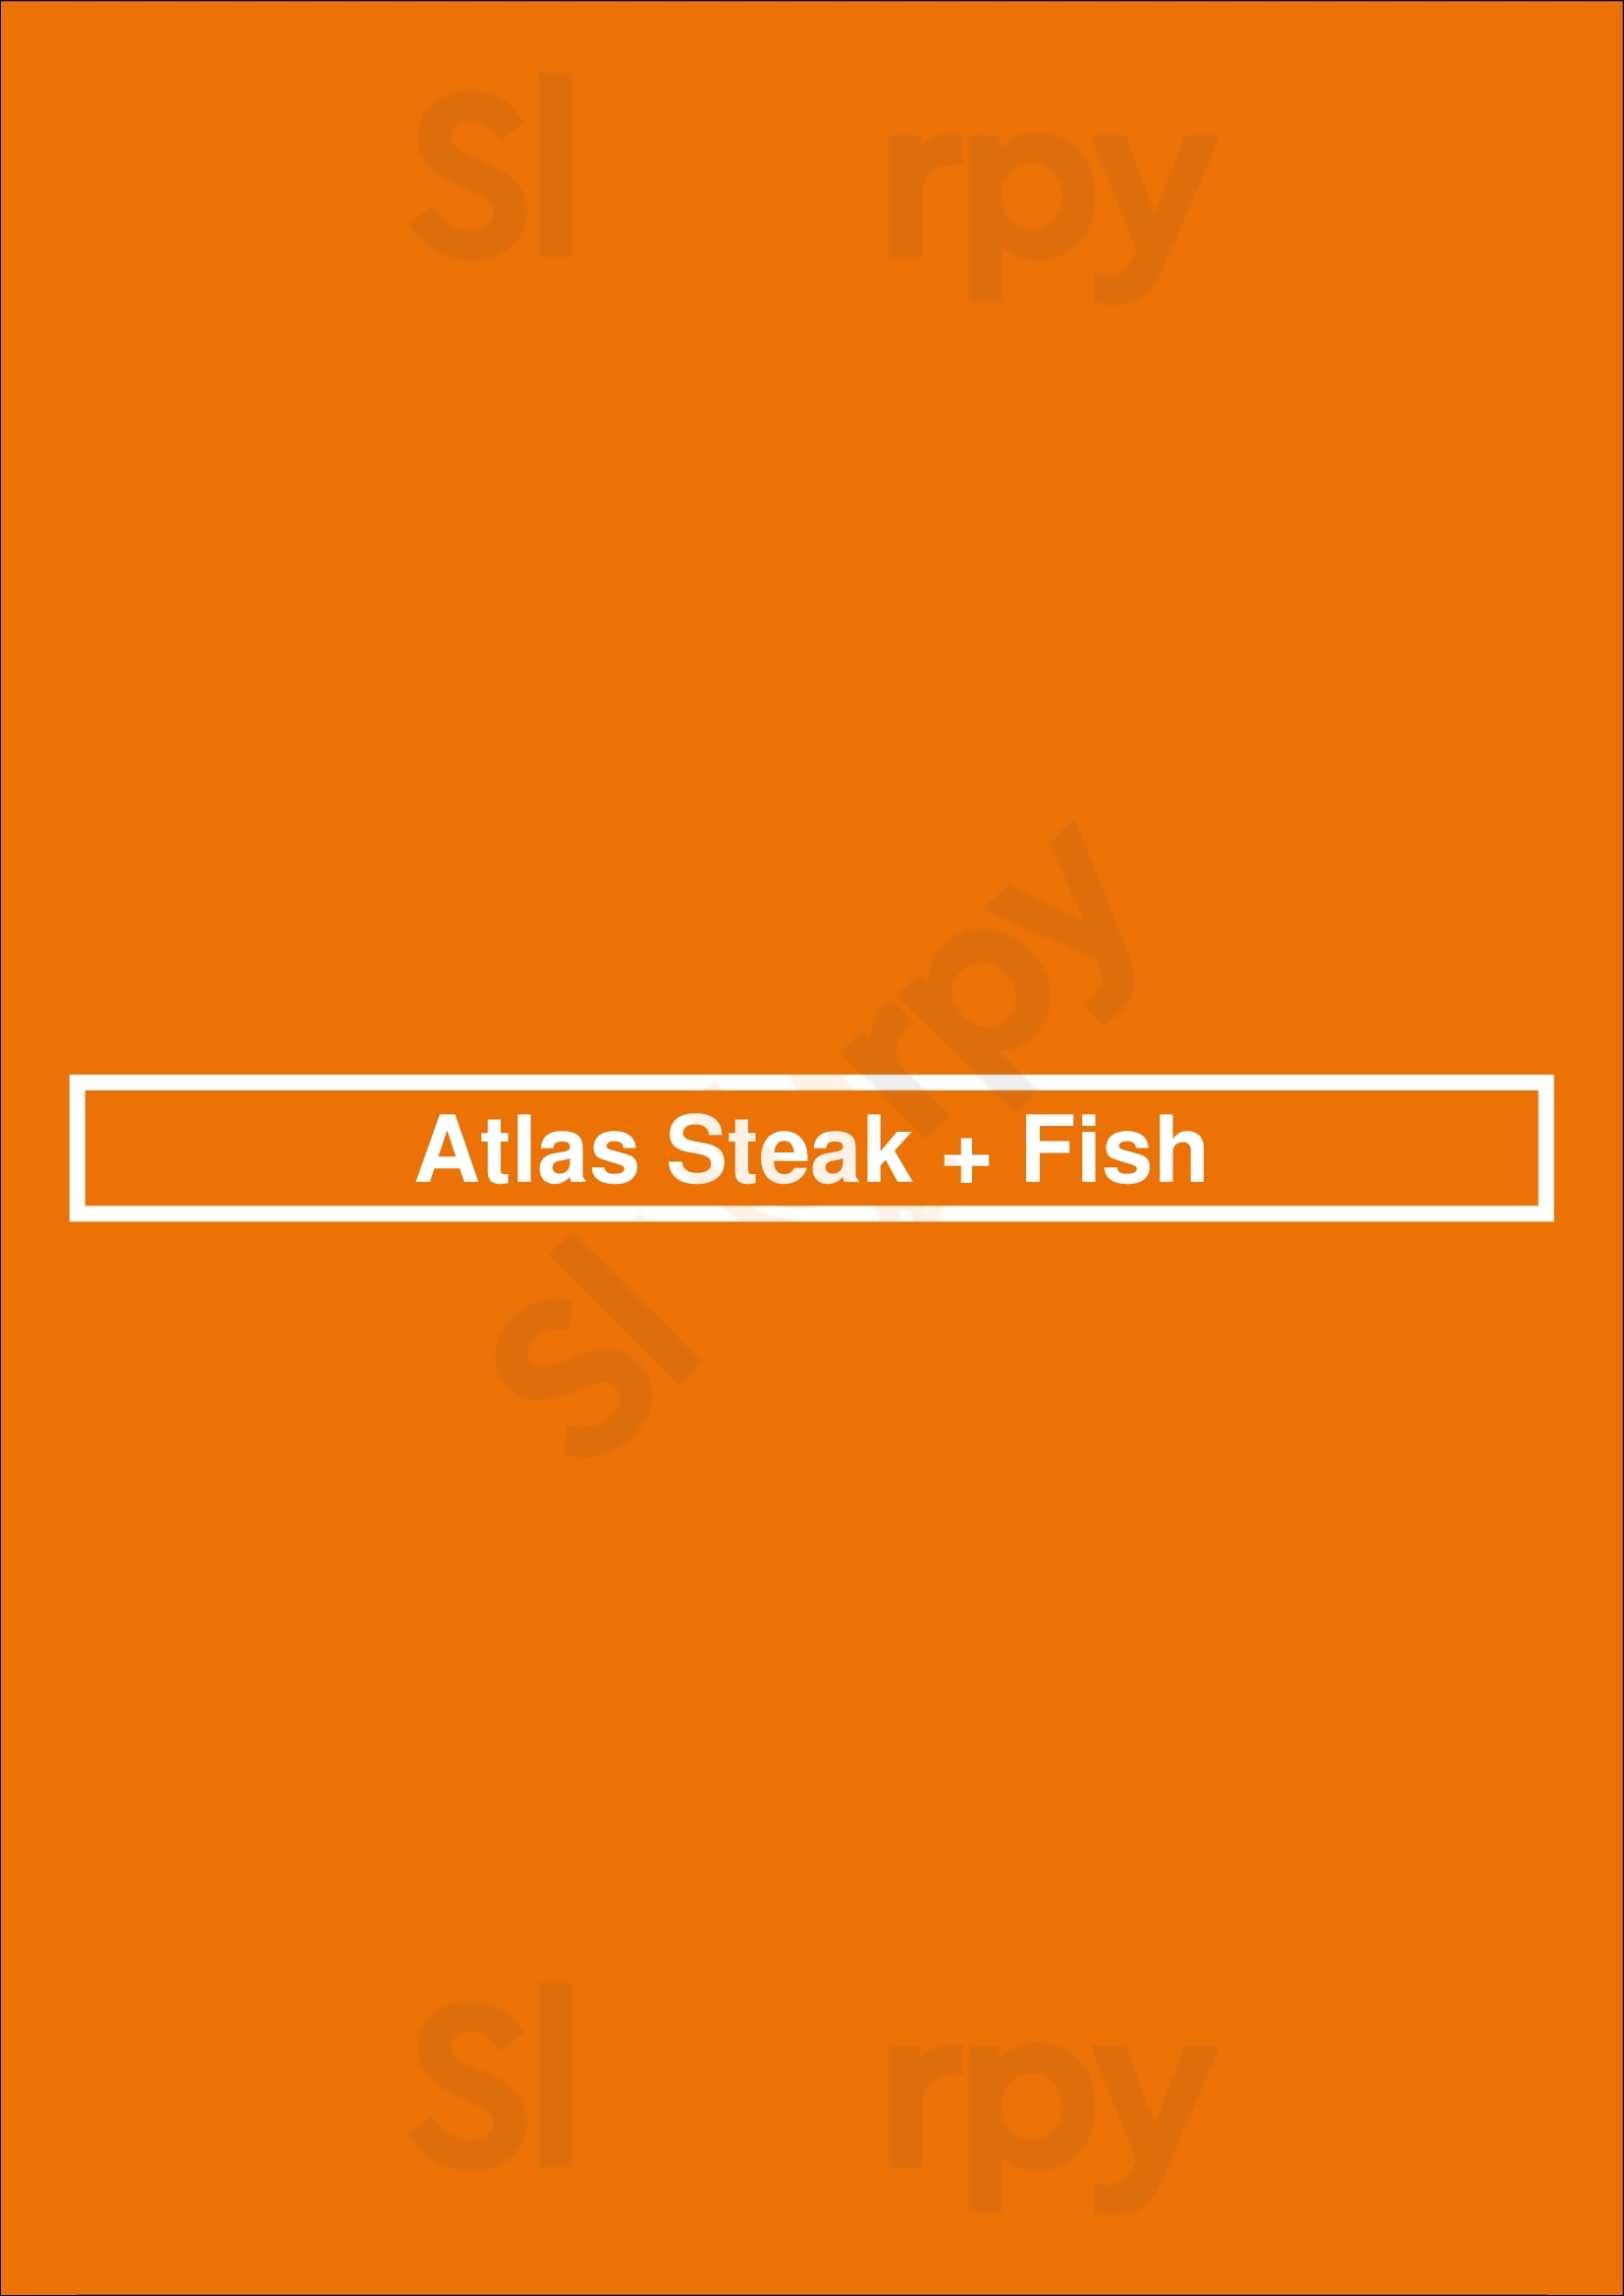 Atlas Steak + Fish Edmonton Menu - 1